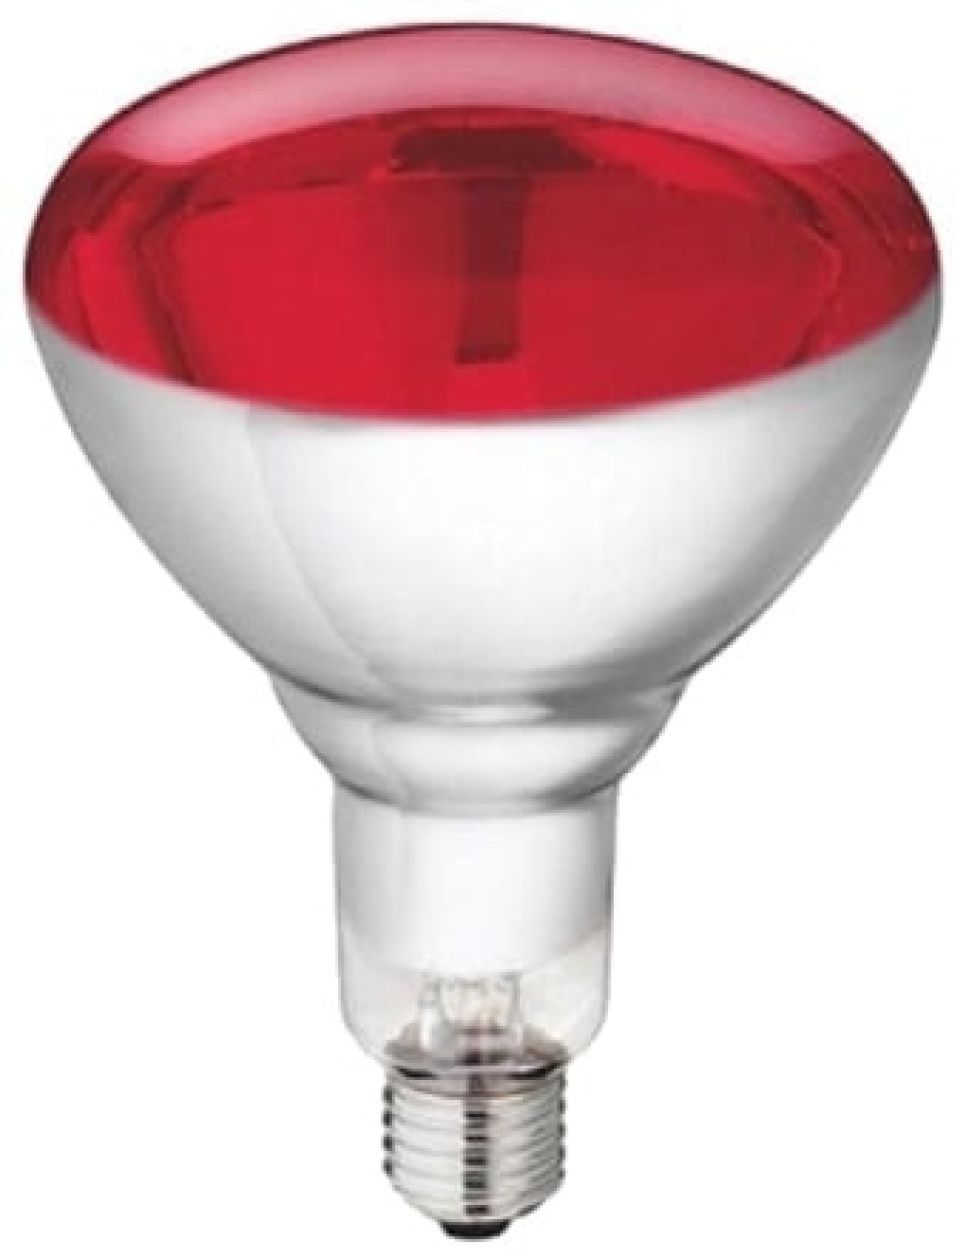 Ampoule Philips IR Rouge 250 W dans le groupe Électroménager / Réchauffer et cuire / Lampe chauffante l\'adresse The Kitchen Lab (1531-16615)